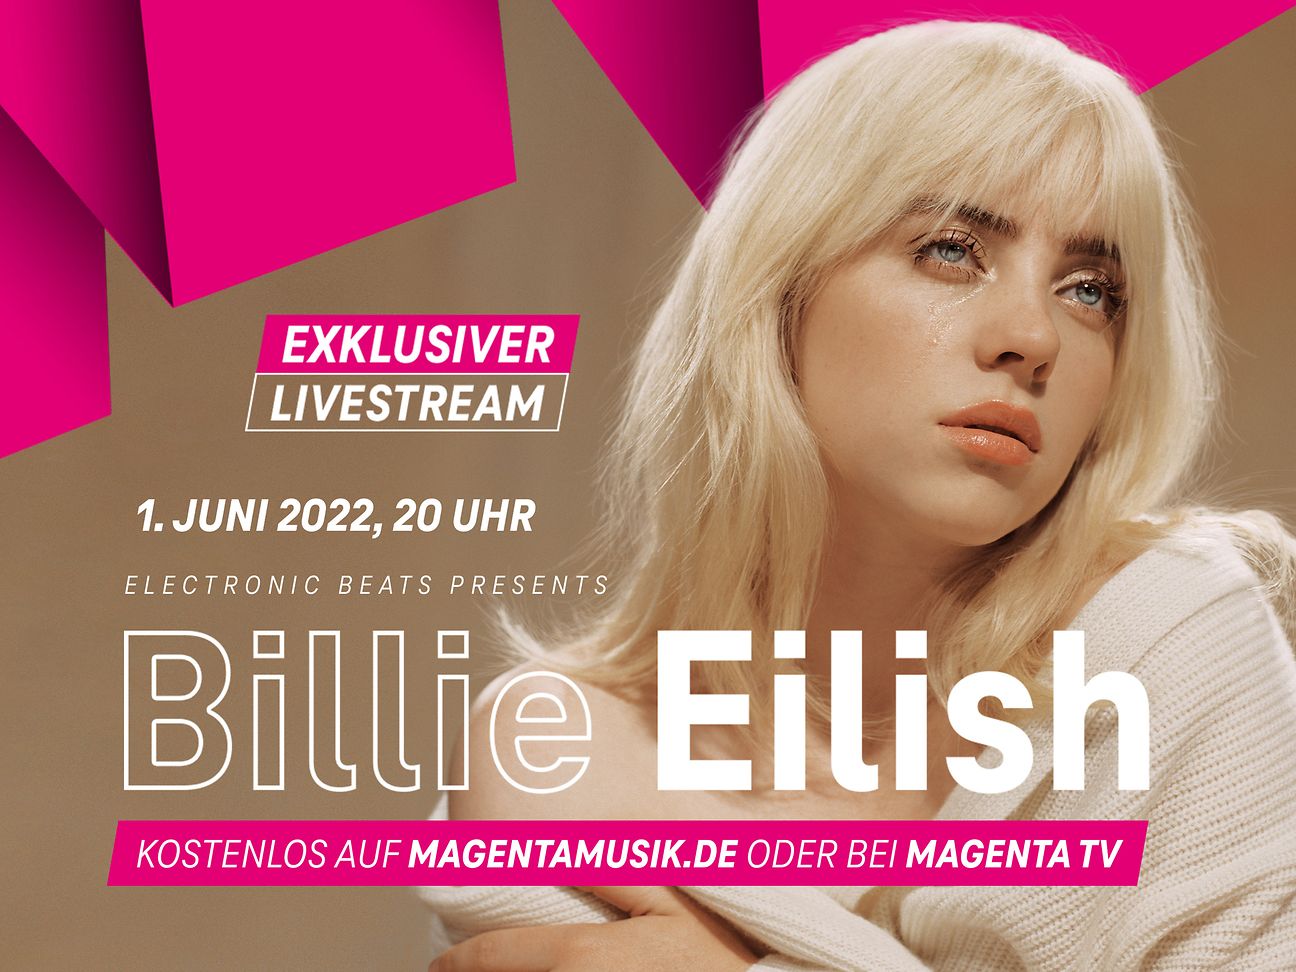 Telekom Electronic Beats bringt Billie Eilish vor Europatournee nach Deutschland Deutsche Telekom